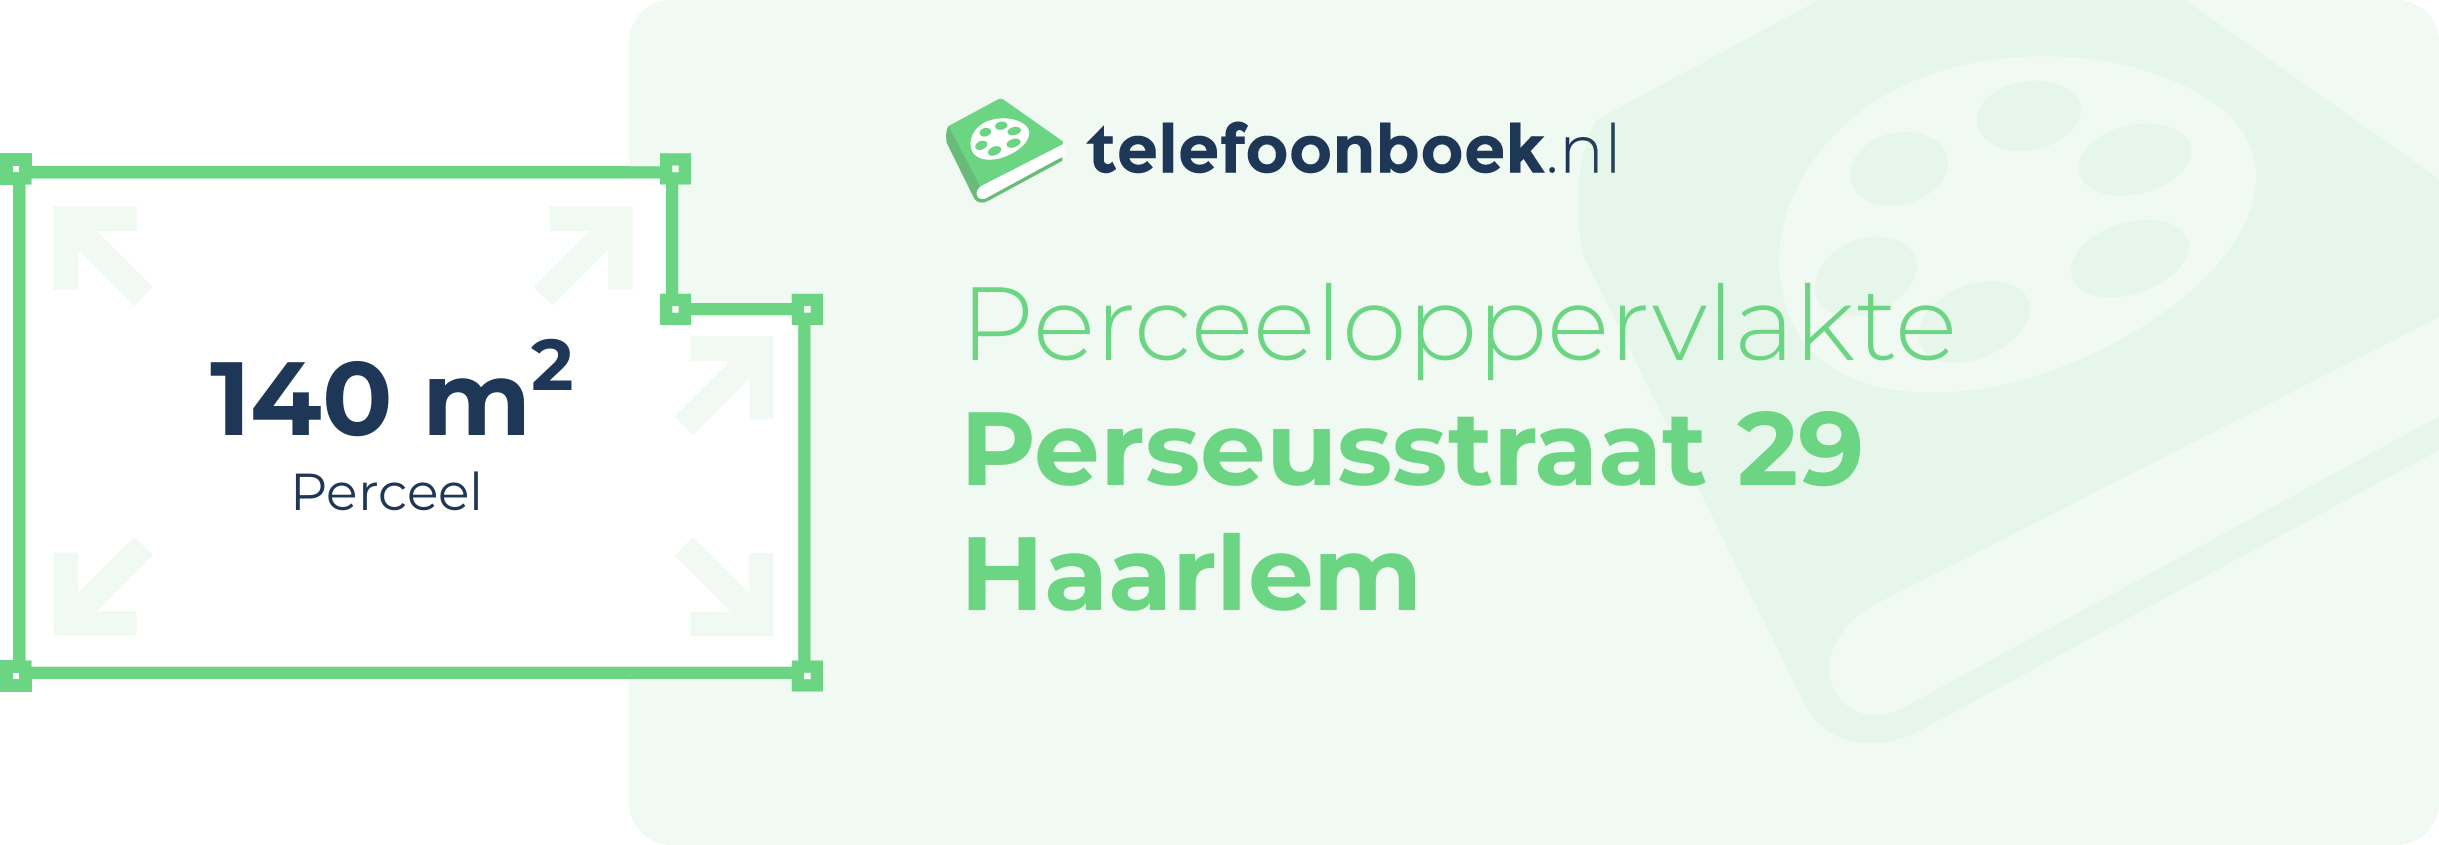 Perceeloppervlakte Perseusstraat 29 Haarlem